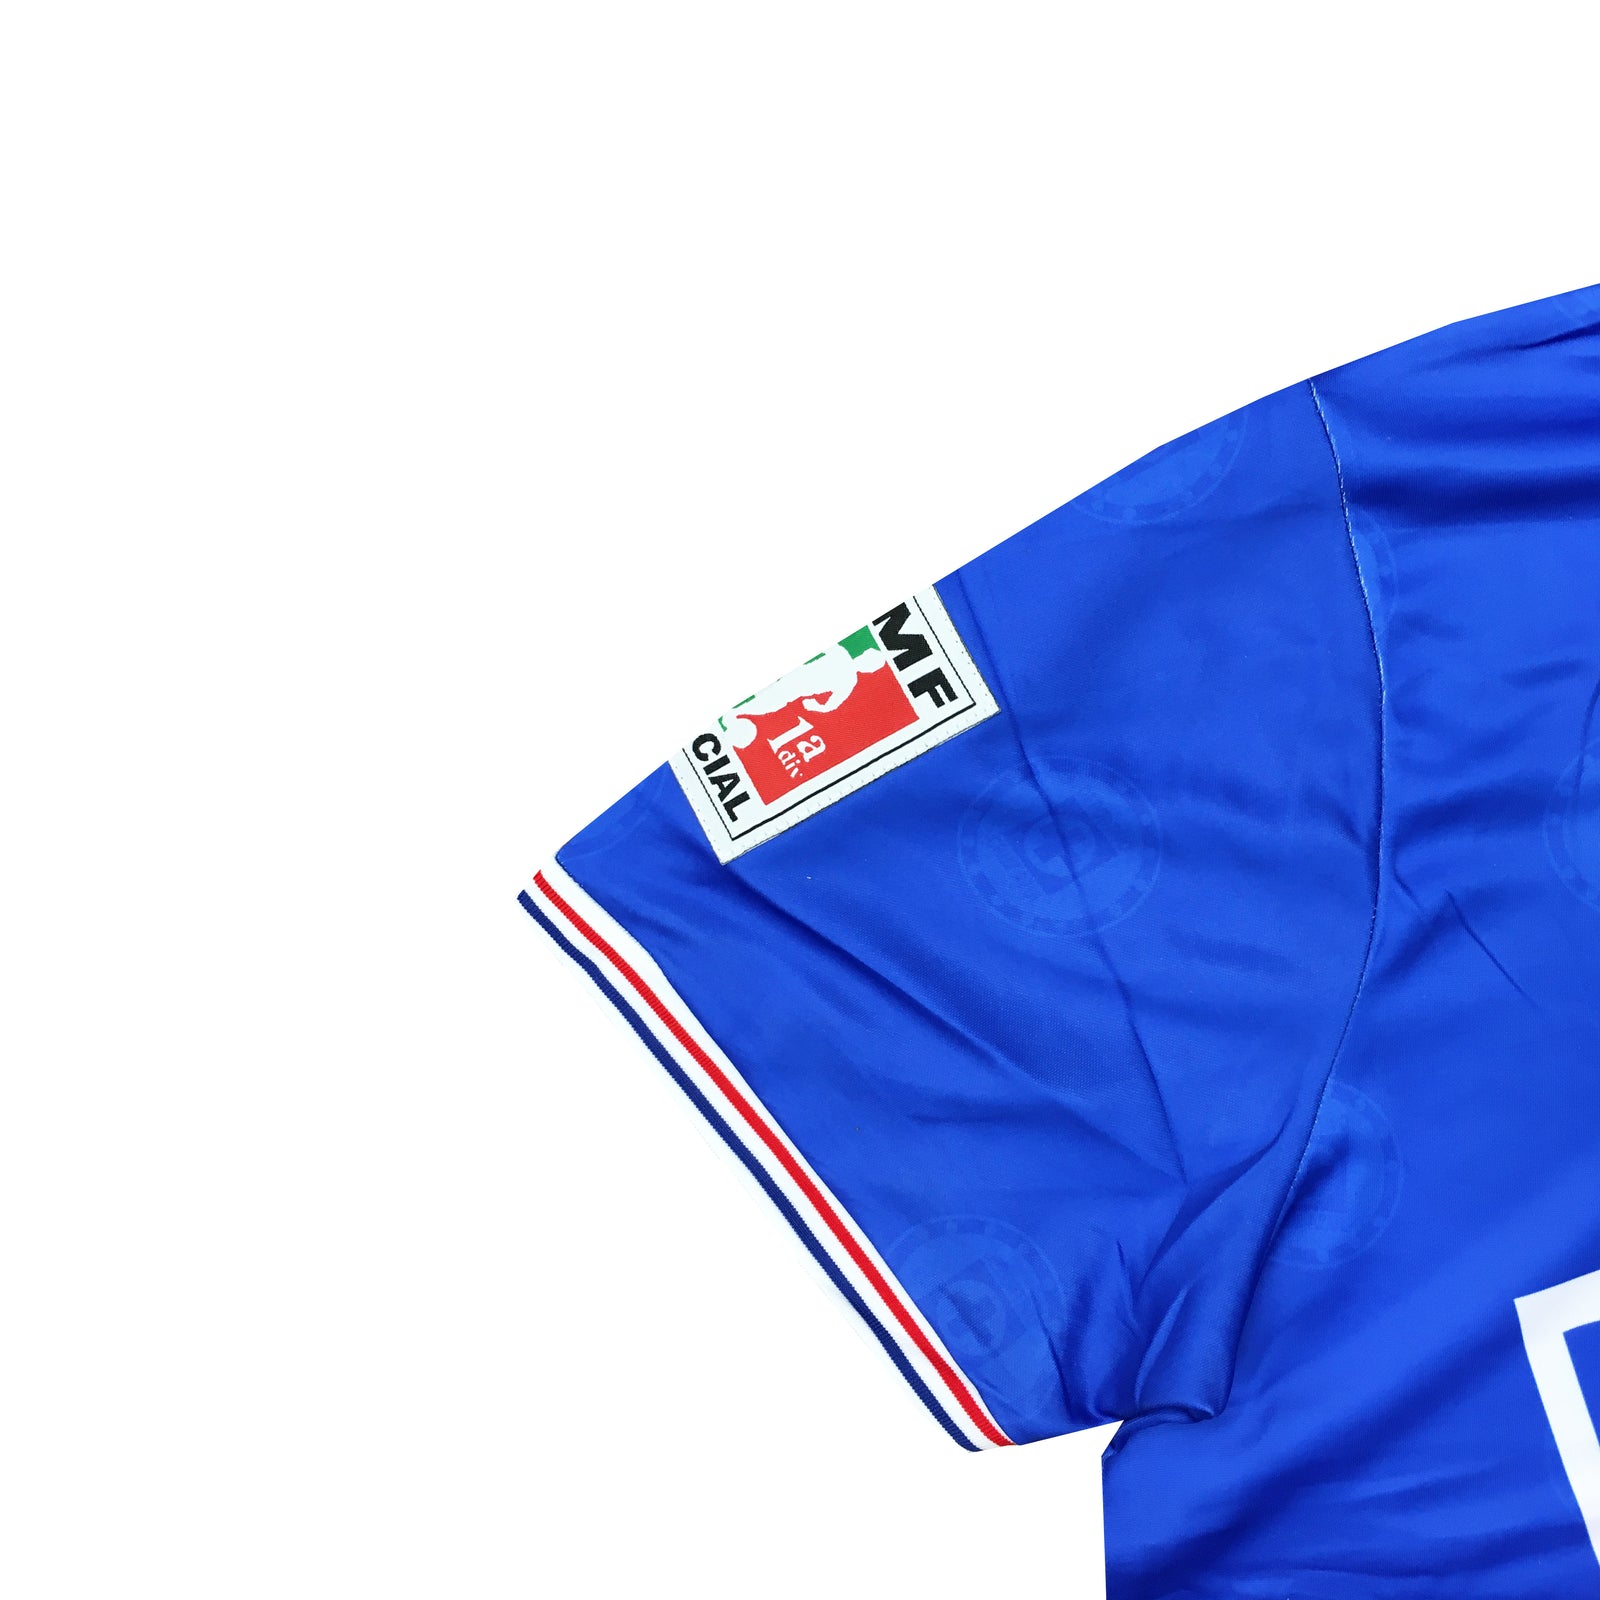 1997 blue jays jersey